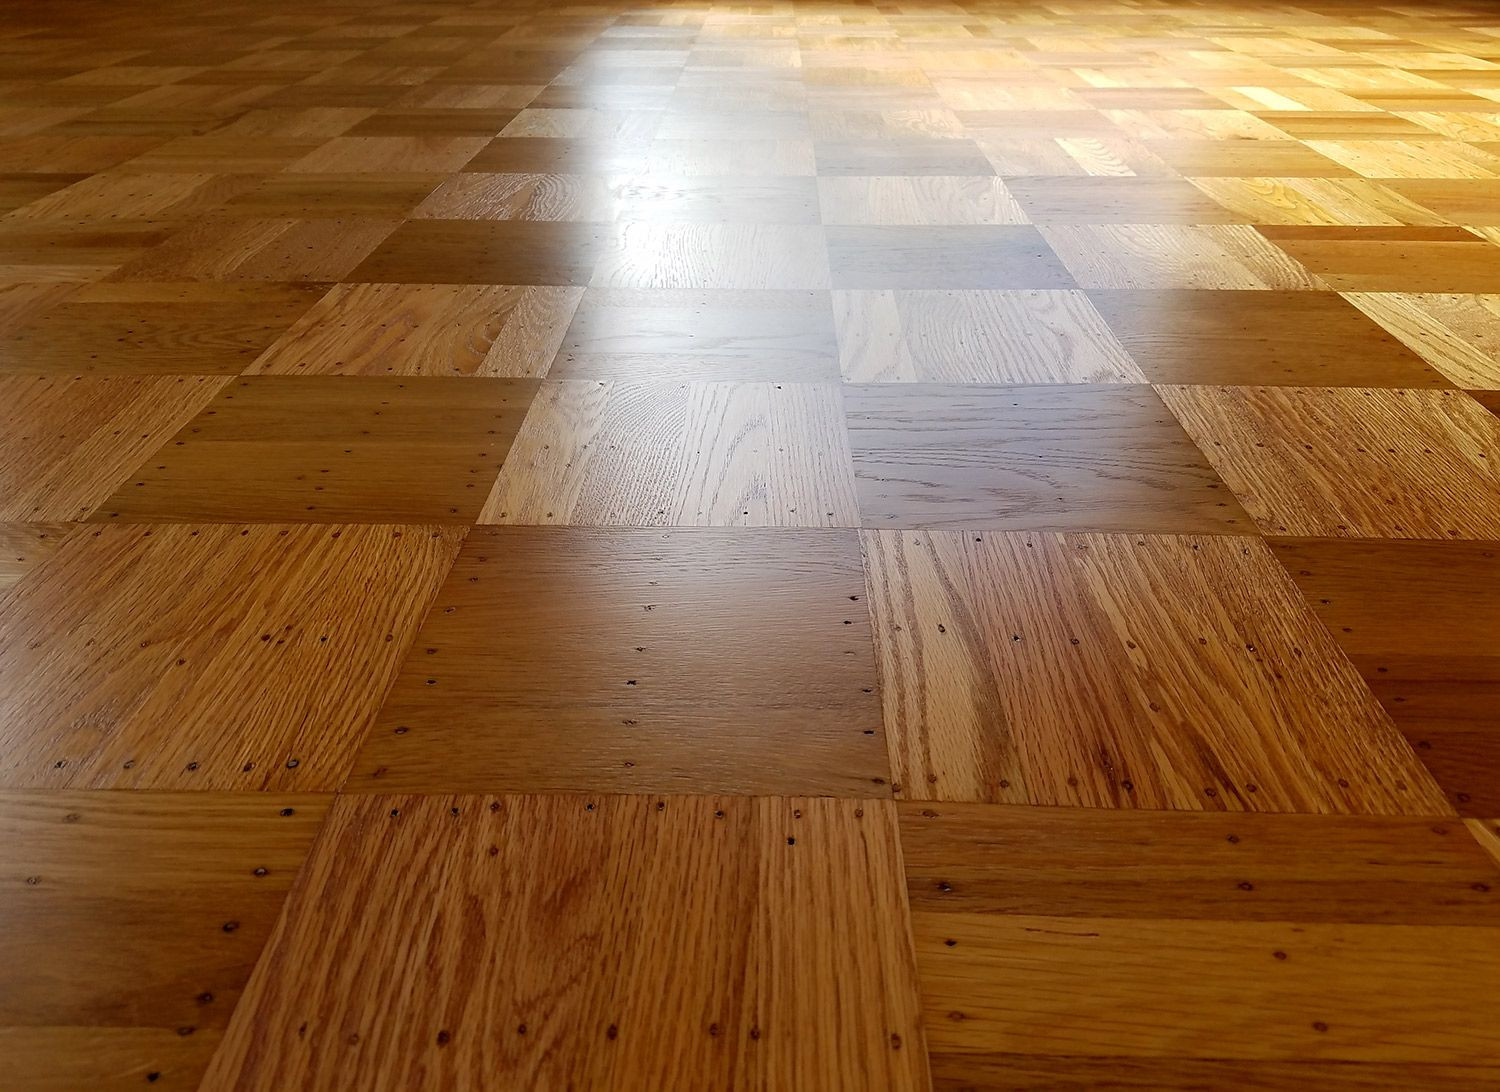 16 Wonderful Benefits Of Hardwood Floors 2024 free download benefits of hardwood floors of refinishing oak parquet floors refinish pinterest room inside refinishing oak parquet floors